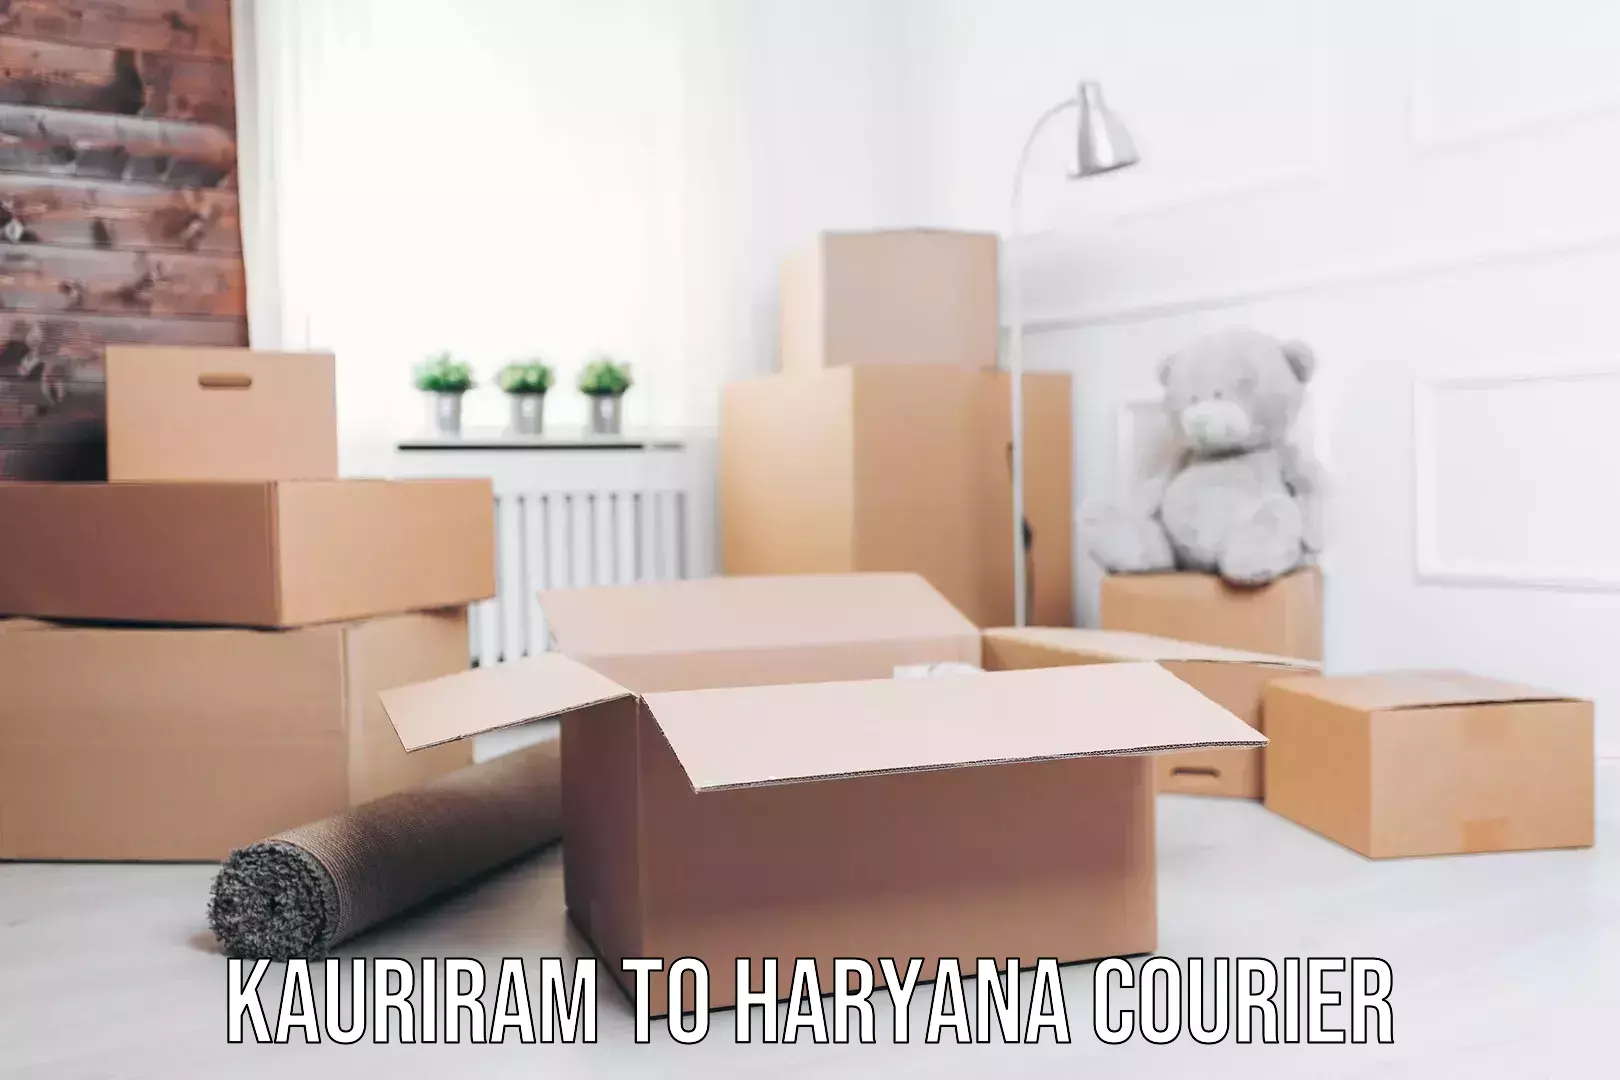 Professional goods transport in Kauriram to Haryana